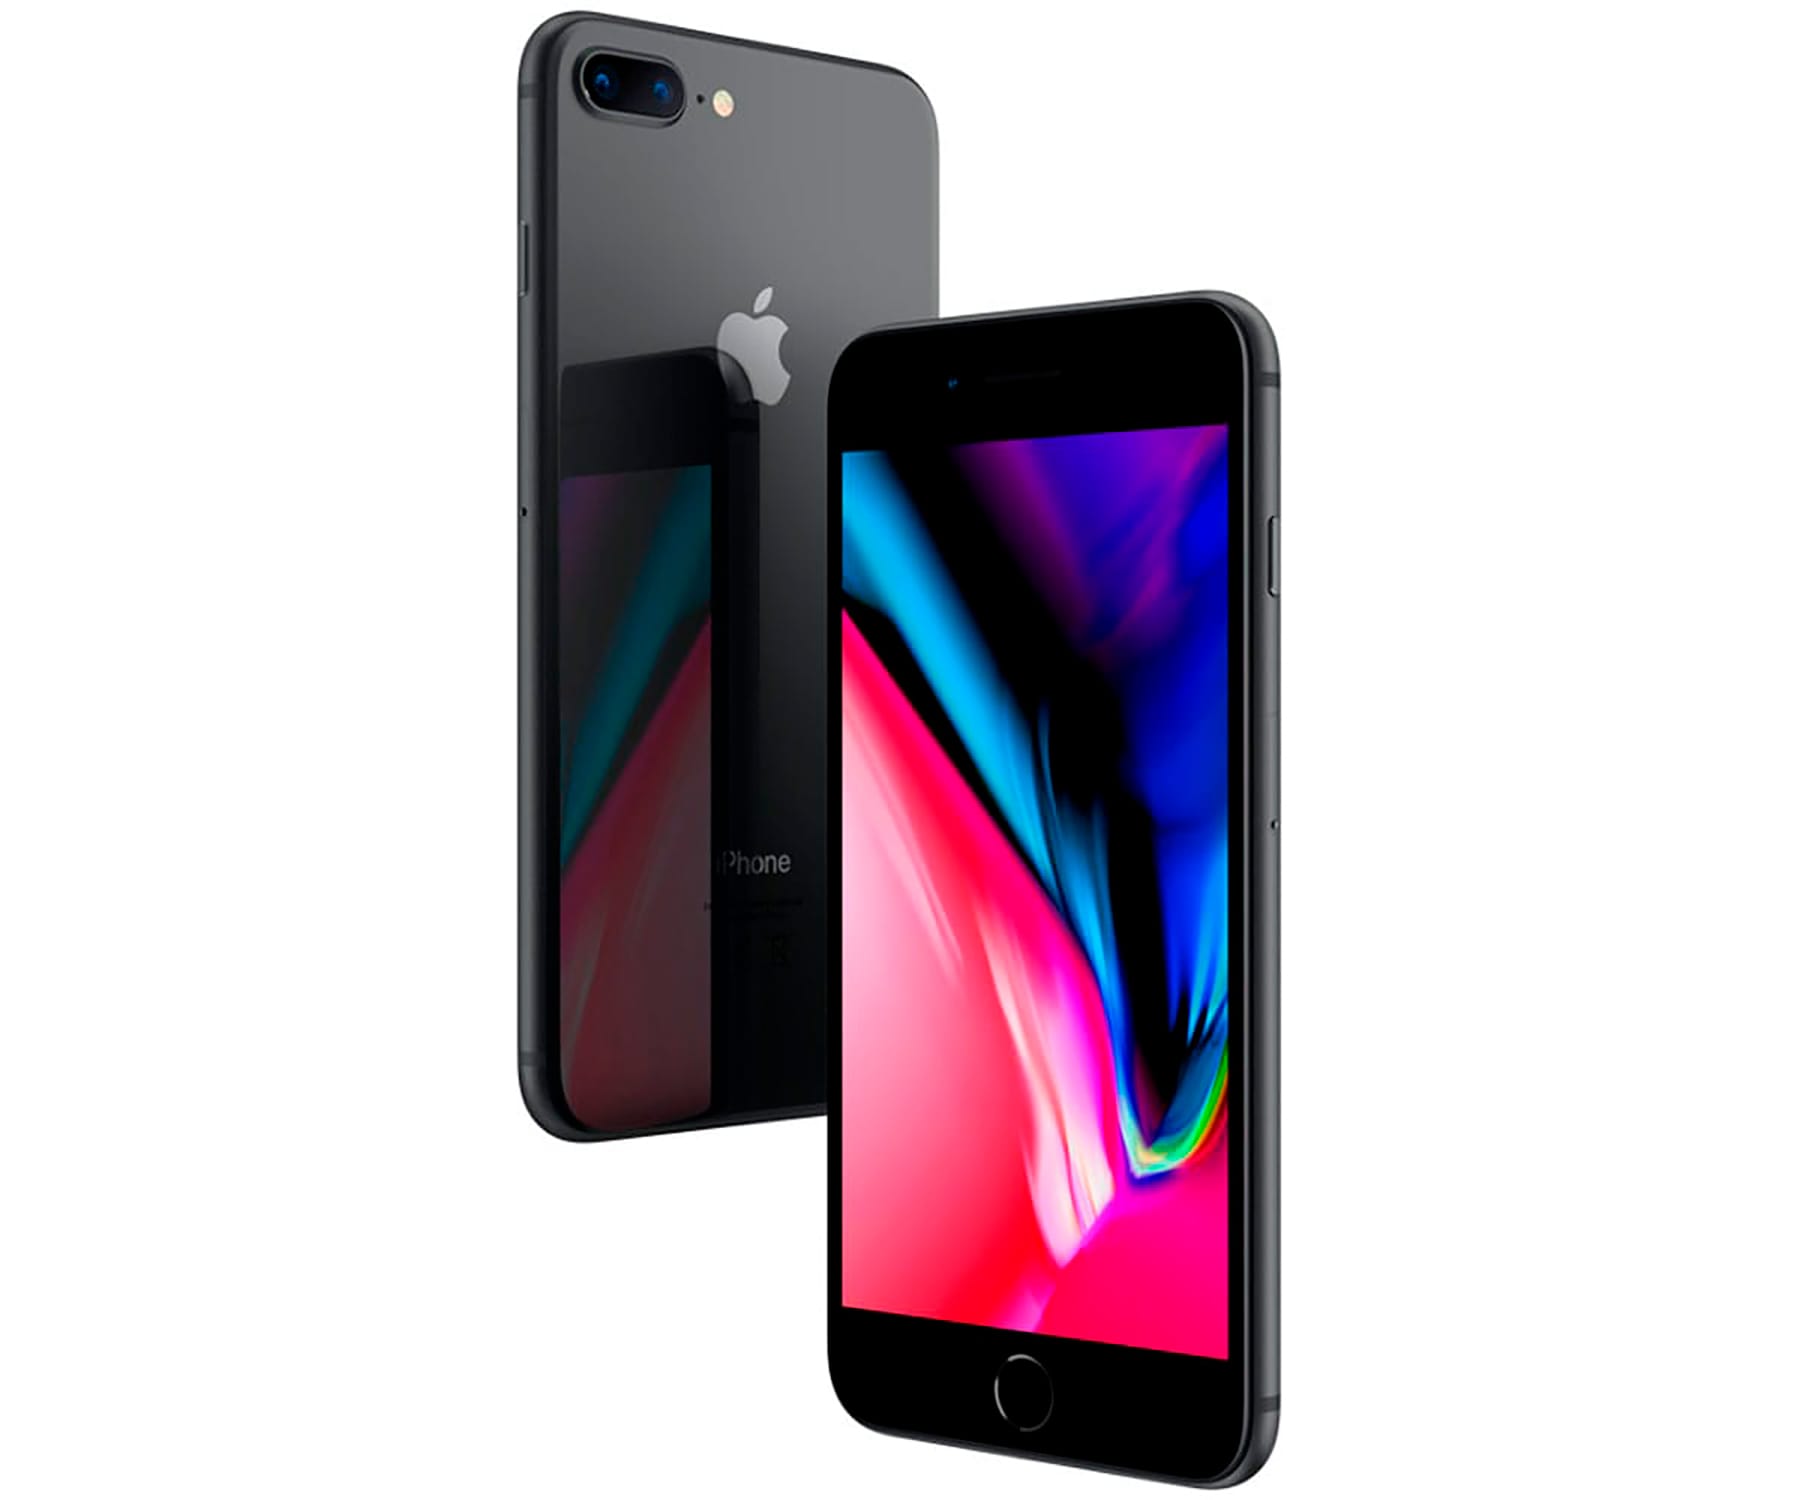 Apple iPhone 8 Plus Space Grey / Reacondicionado / 3+64GB / 5.5" Full HD